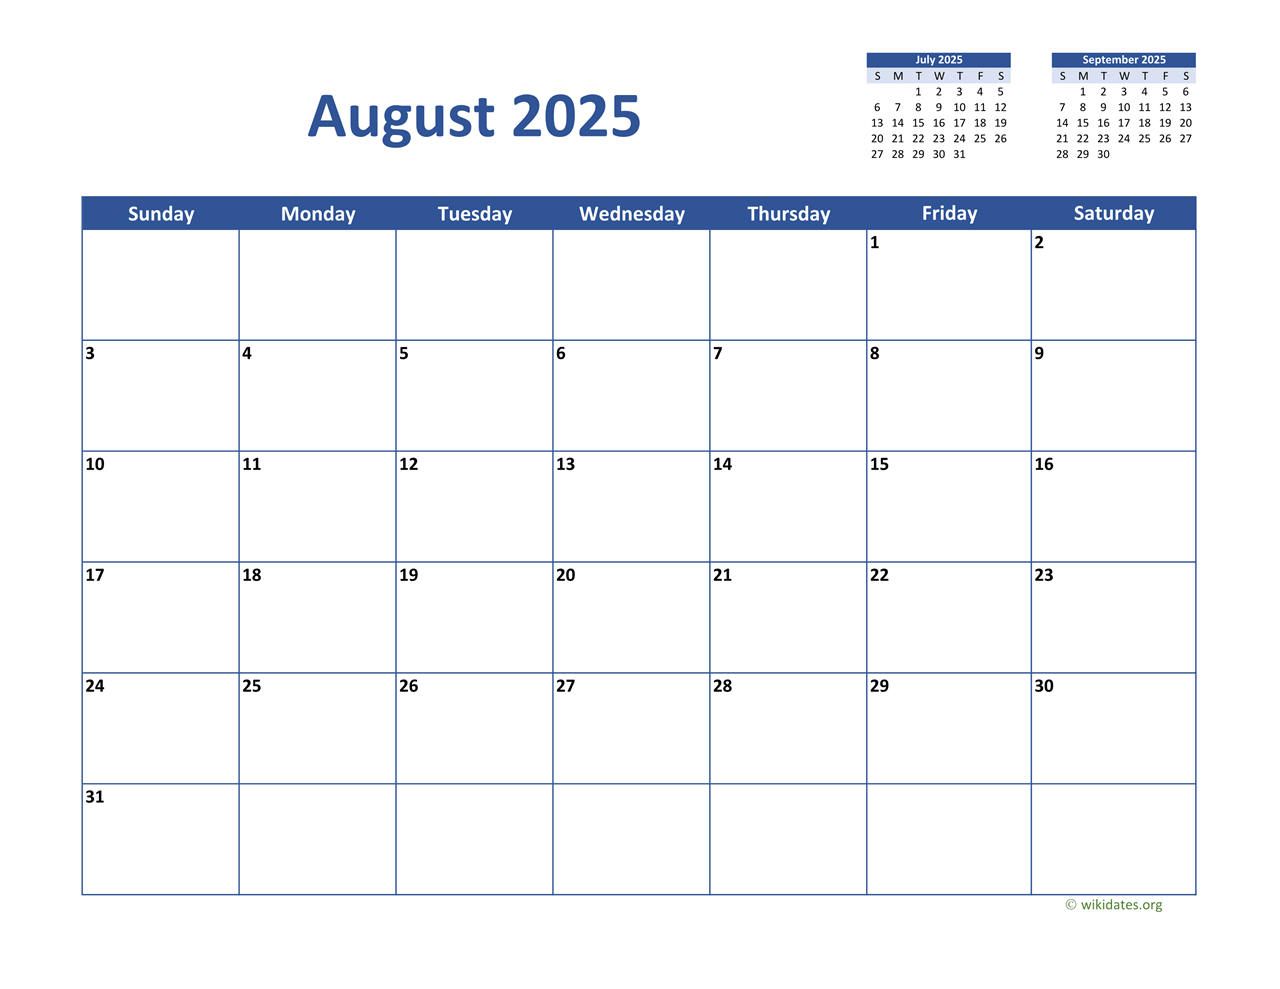 september-2025-monday-start-calendar-monday-to-sunday